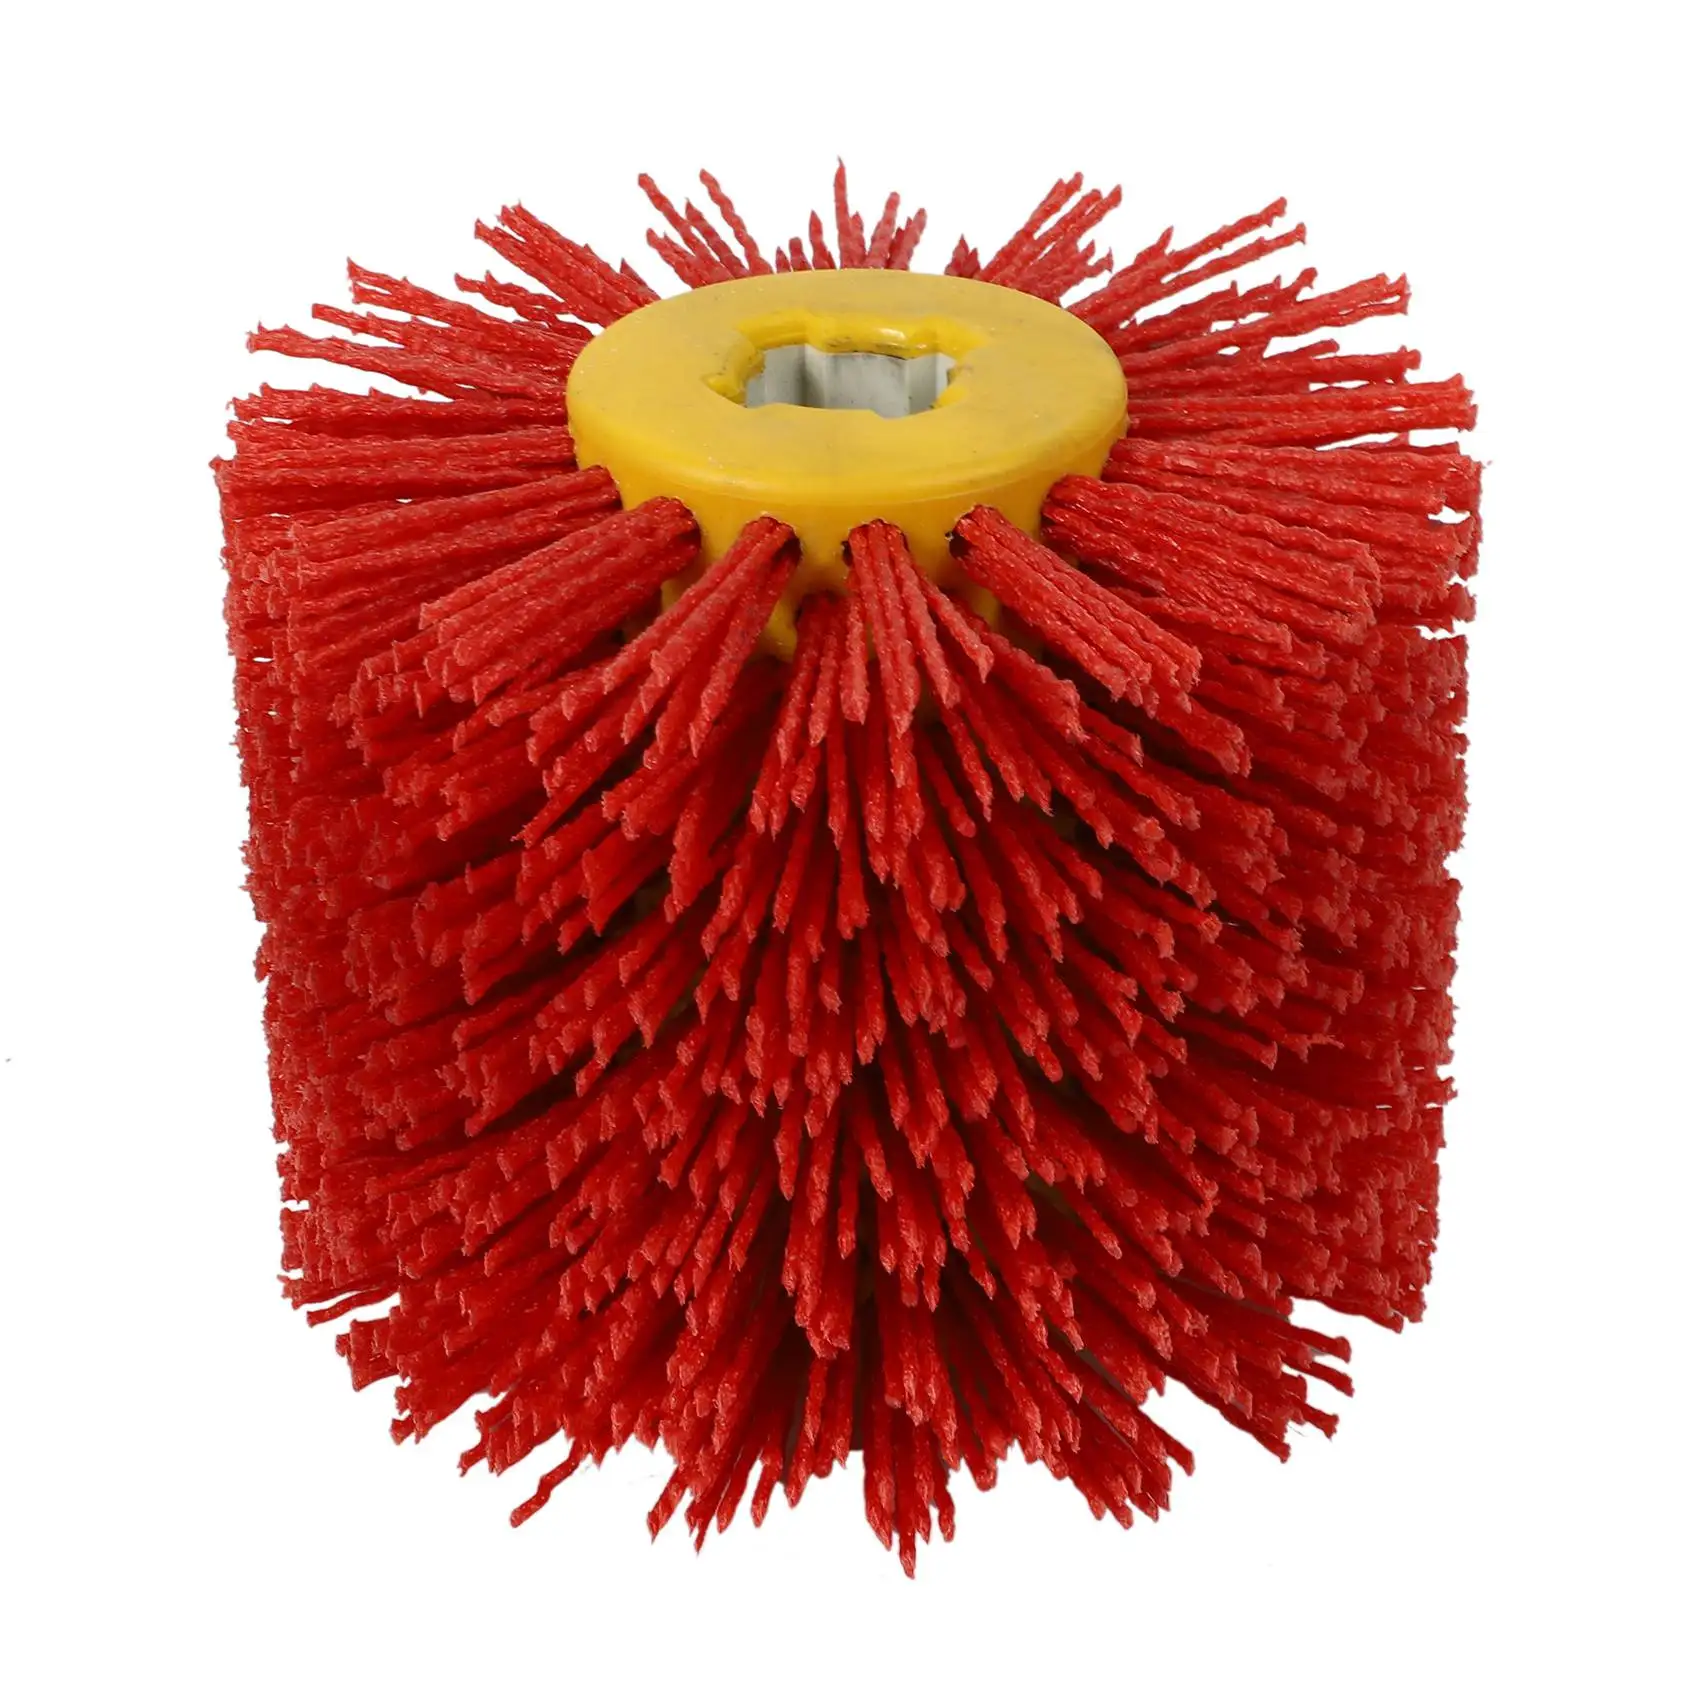 

Красная абразивная проволочная барабанная щетка для удаления заусенцев, полировочное шлифовальное колесо для мебели, дерево, регулируемый угол